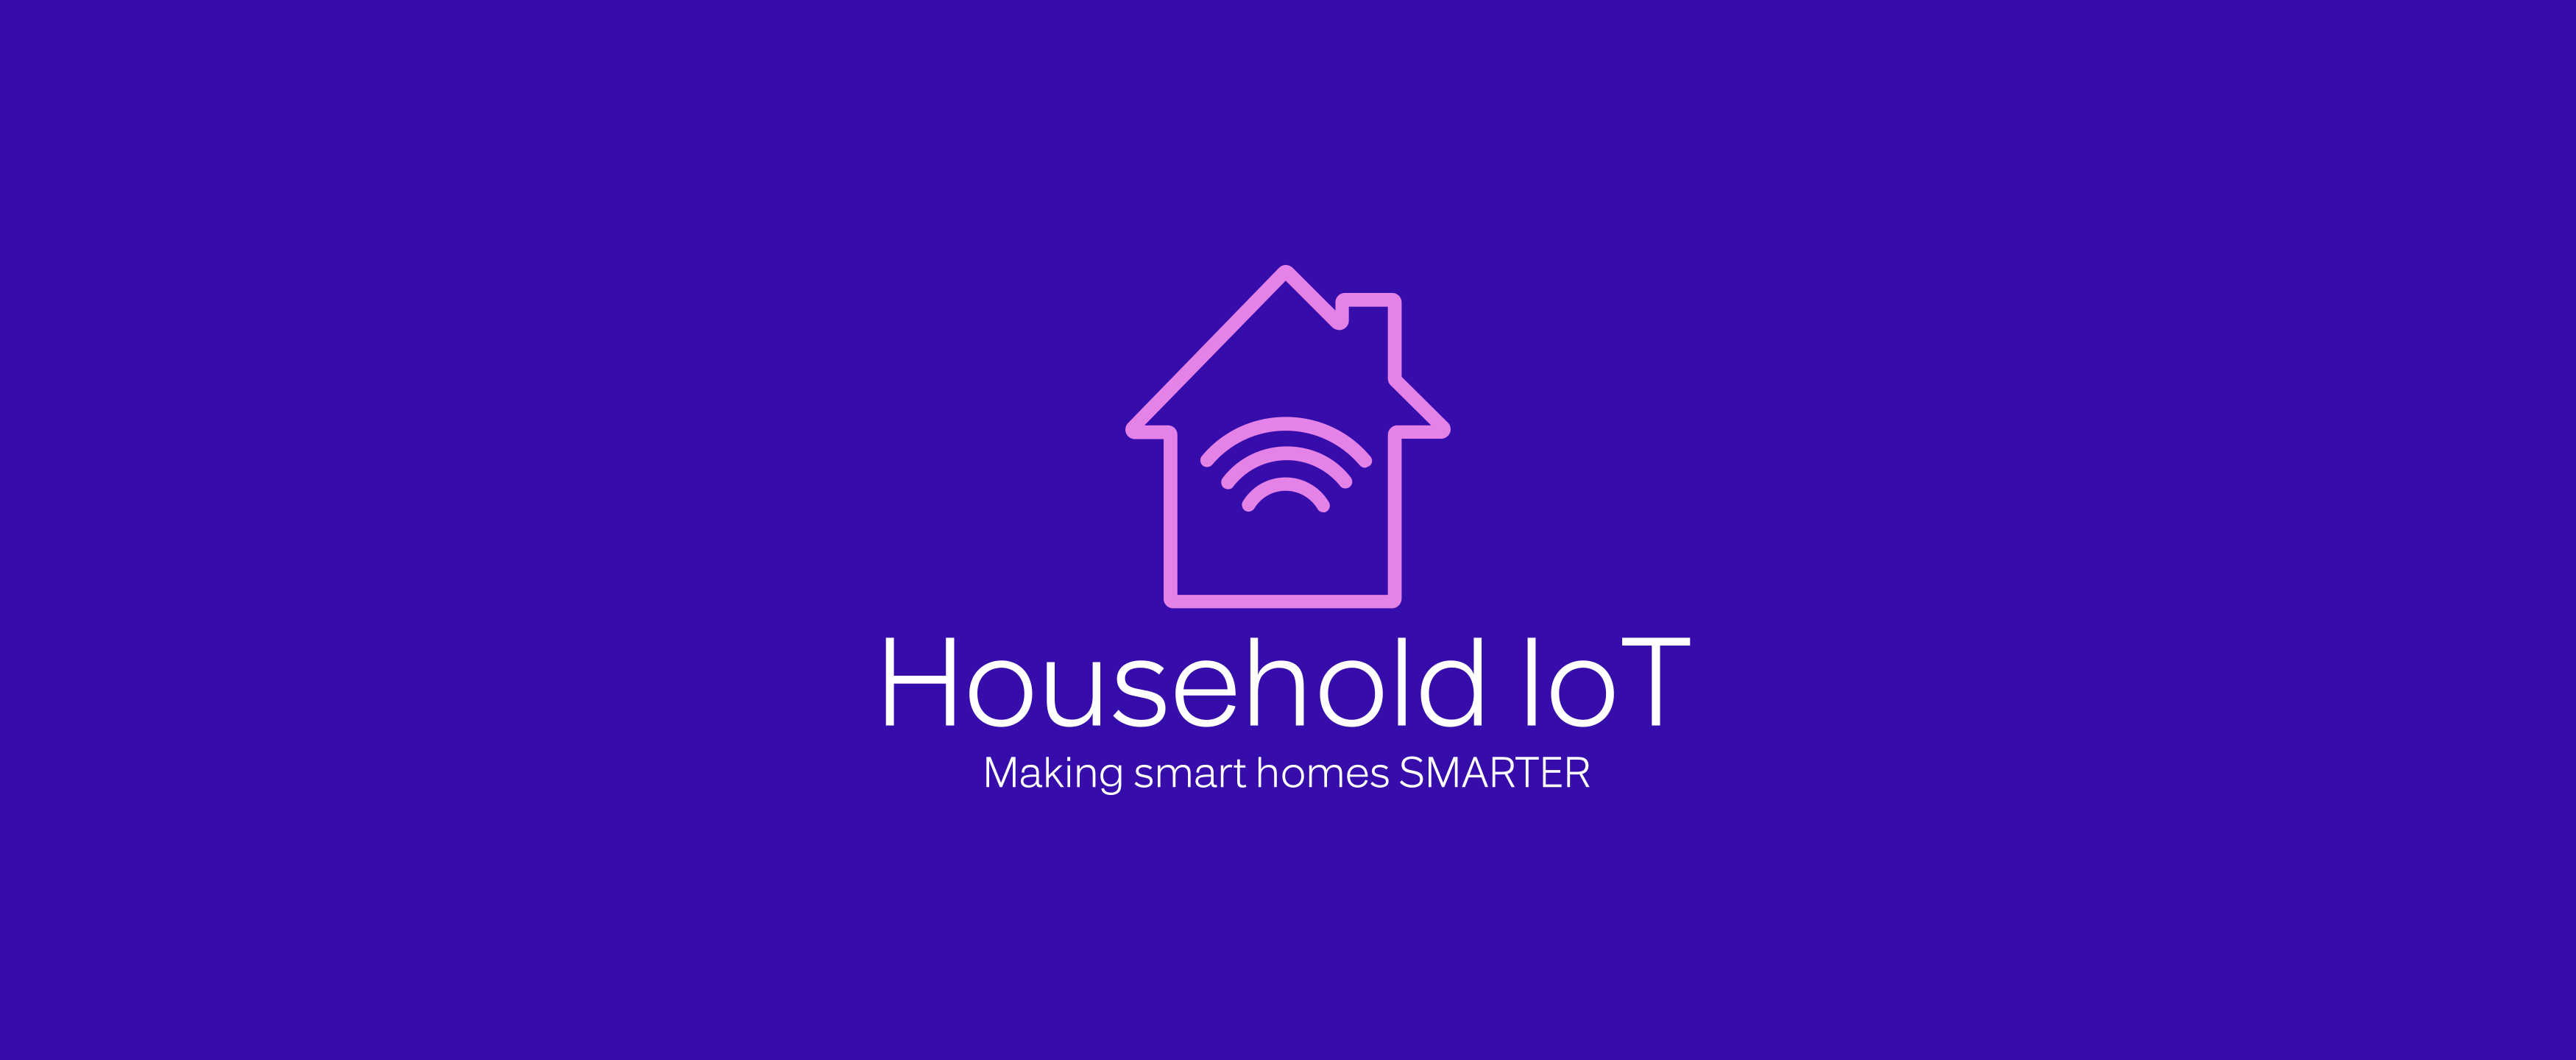 Household Iot